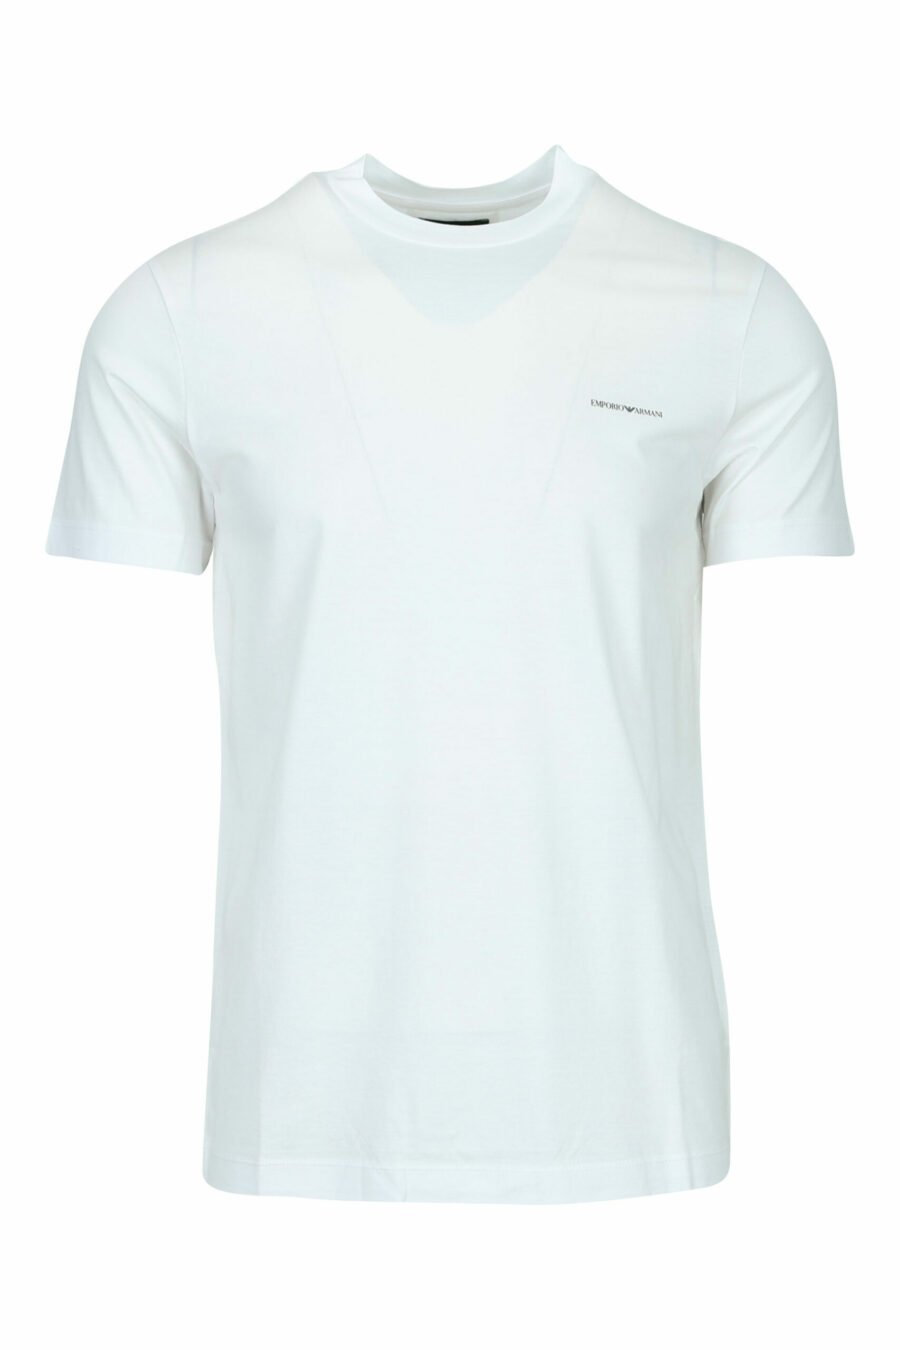 T-shirt branca com o minilogo "emporio" - 8059516200147 scaled